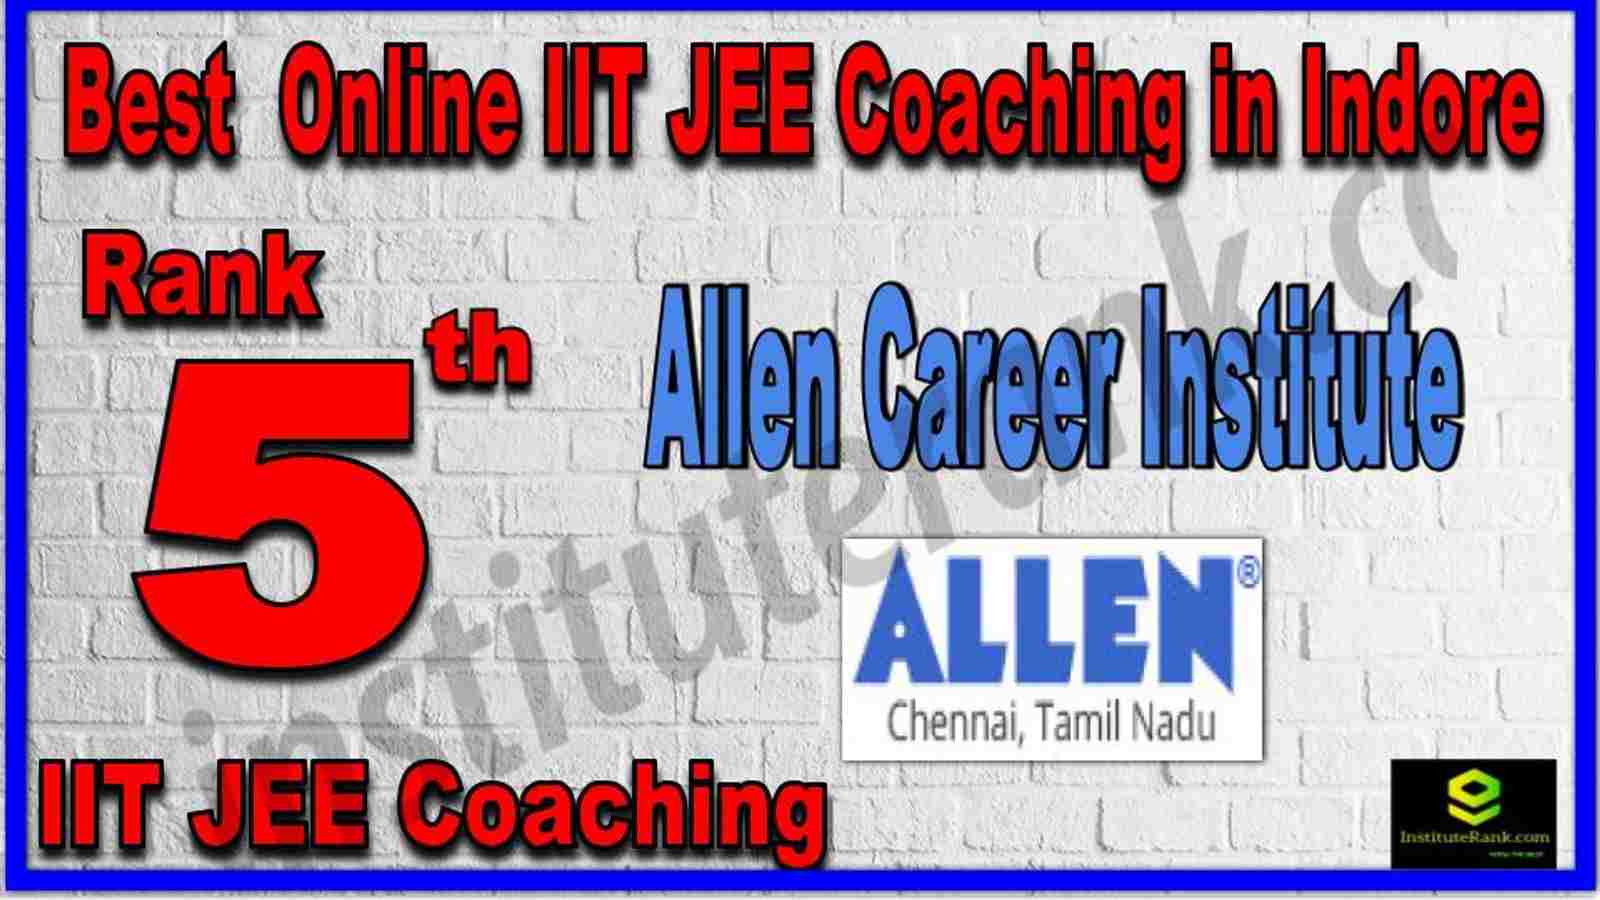 Rank 5th Best Online IIT JEE Coaching in Indore